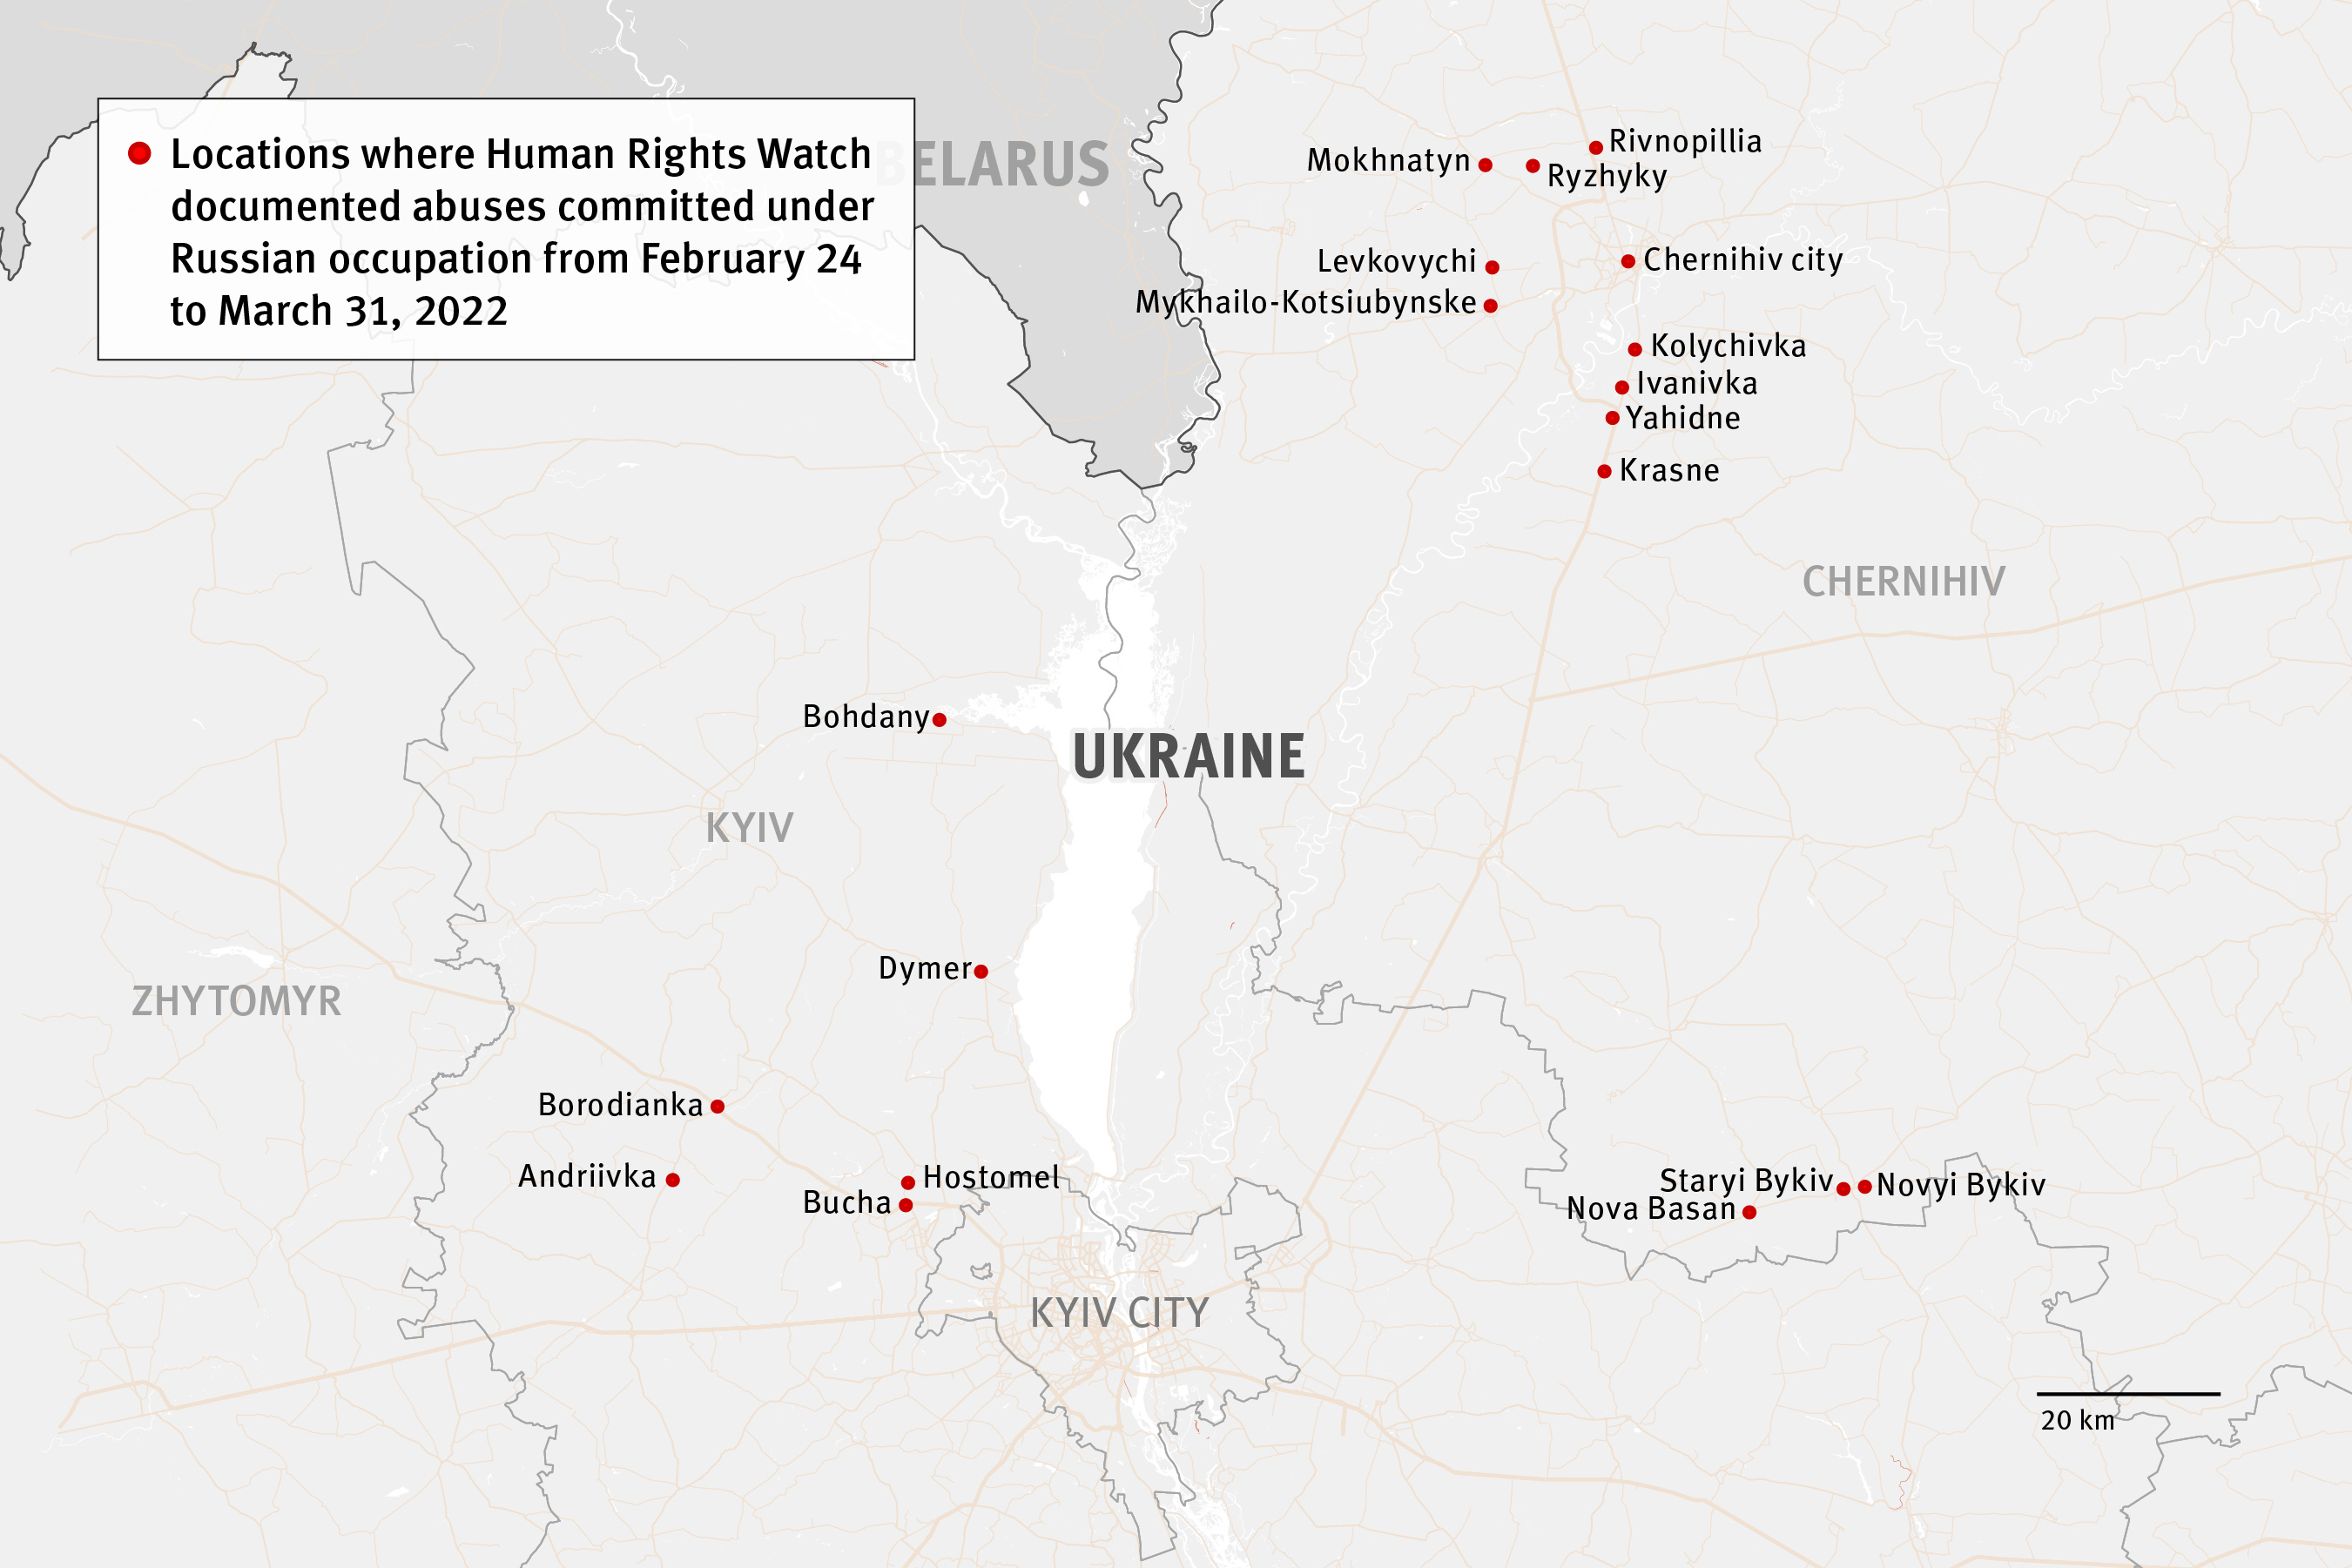 Carte du nord de l’Ukraine, montrant plusieurs villes et villages où les forces d’occupation russes ont commis de graves exactions entre le 24 février et 31 mars 2022, selon les recherches menées par Human Rights Watch.